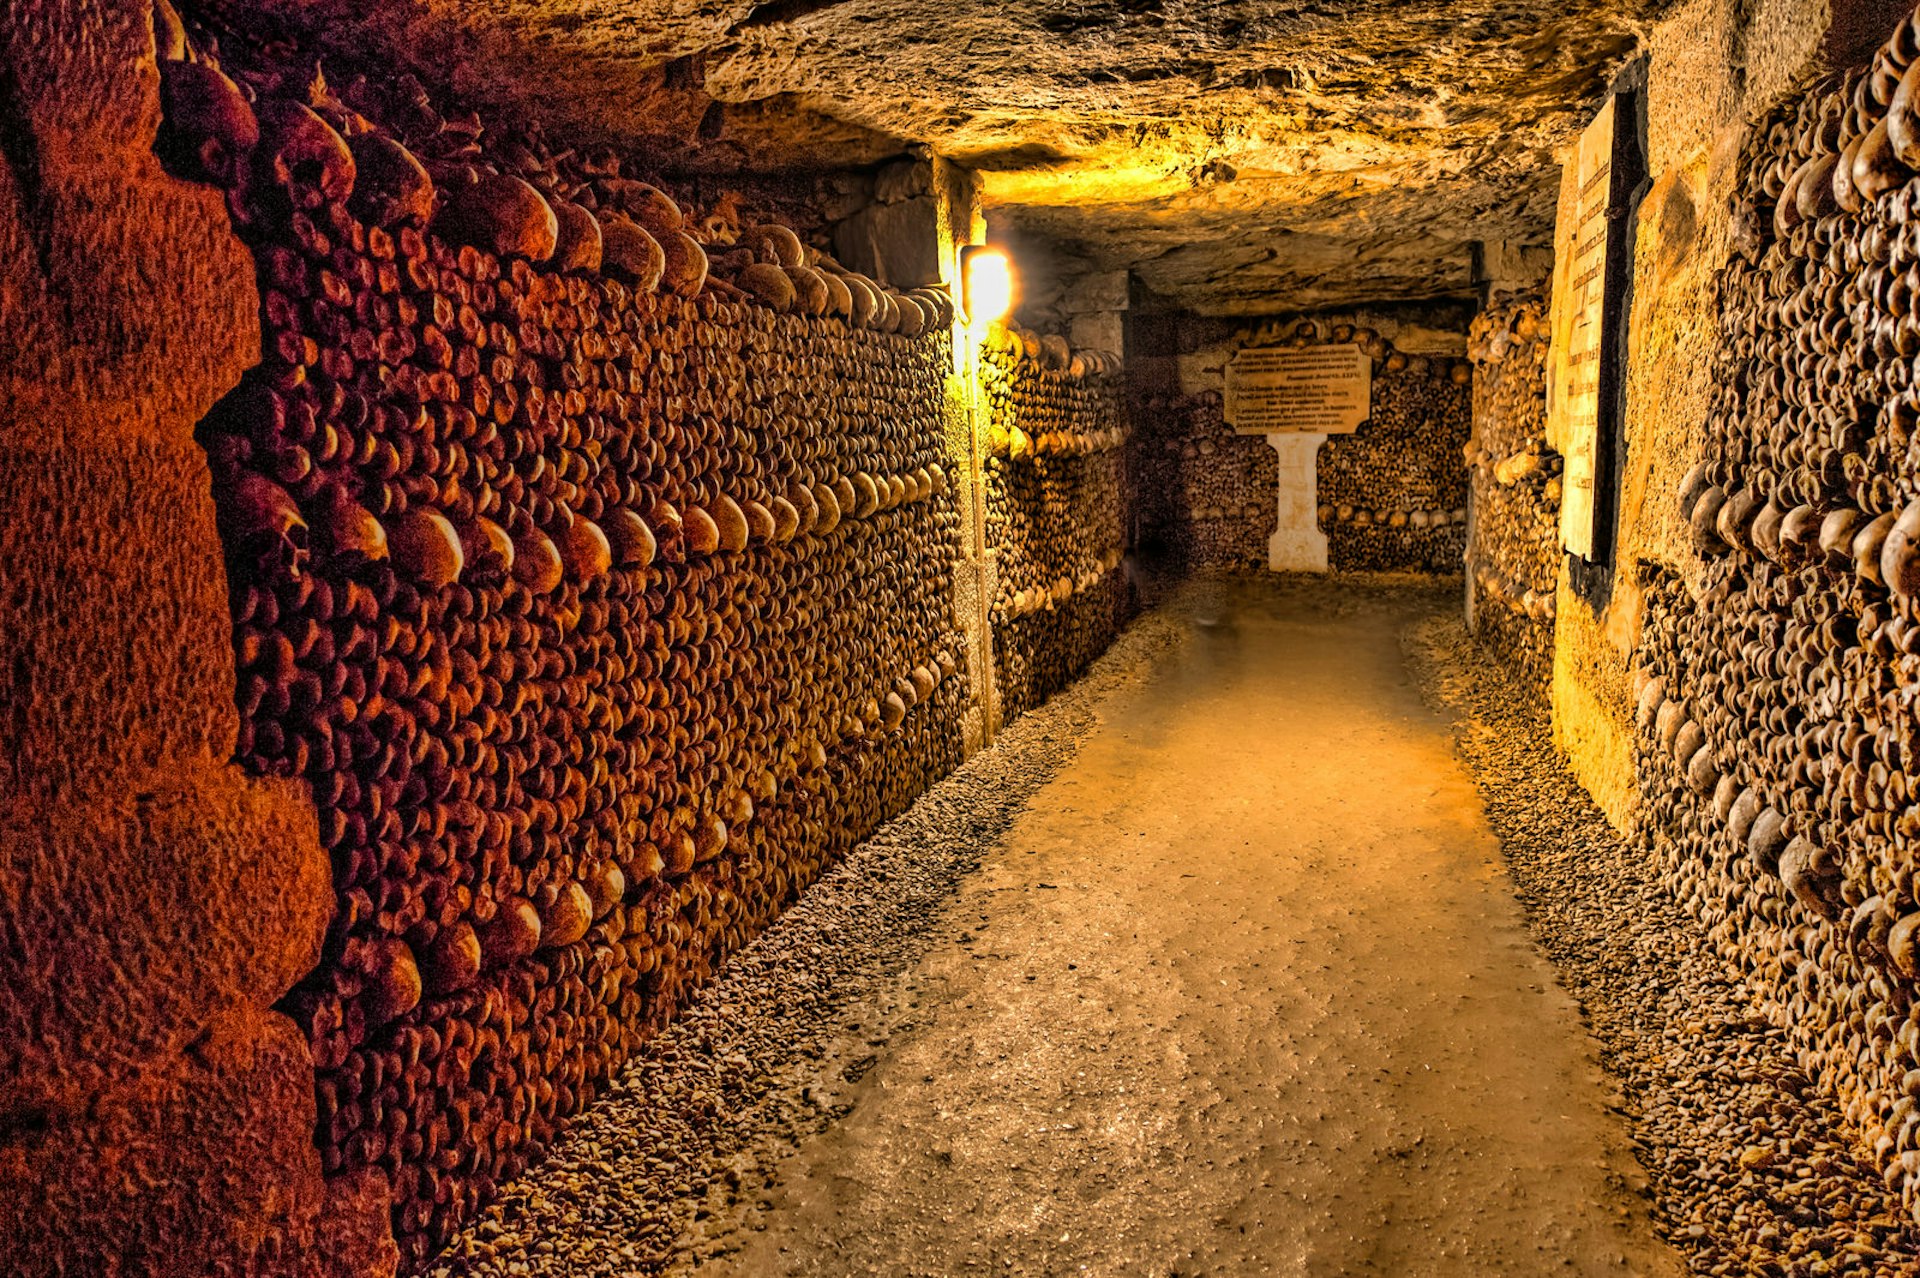 Spooky cities - a dark corridor in Paris catacombs